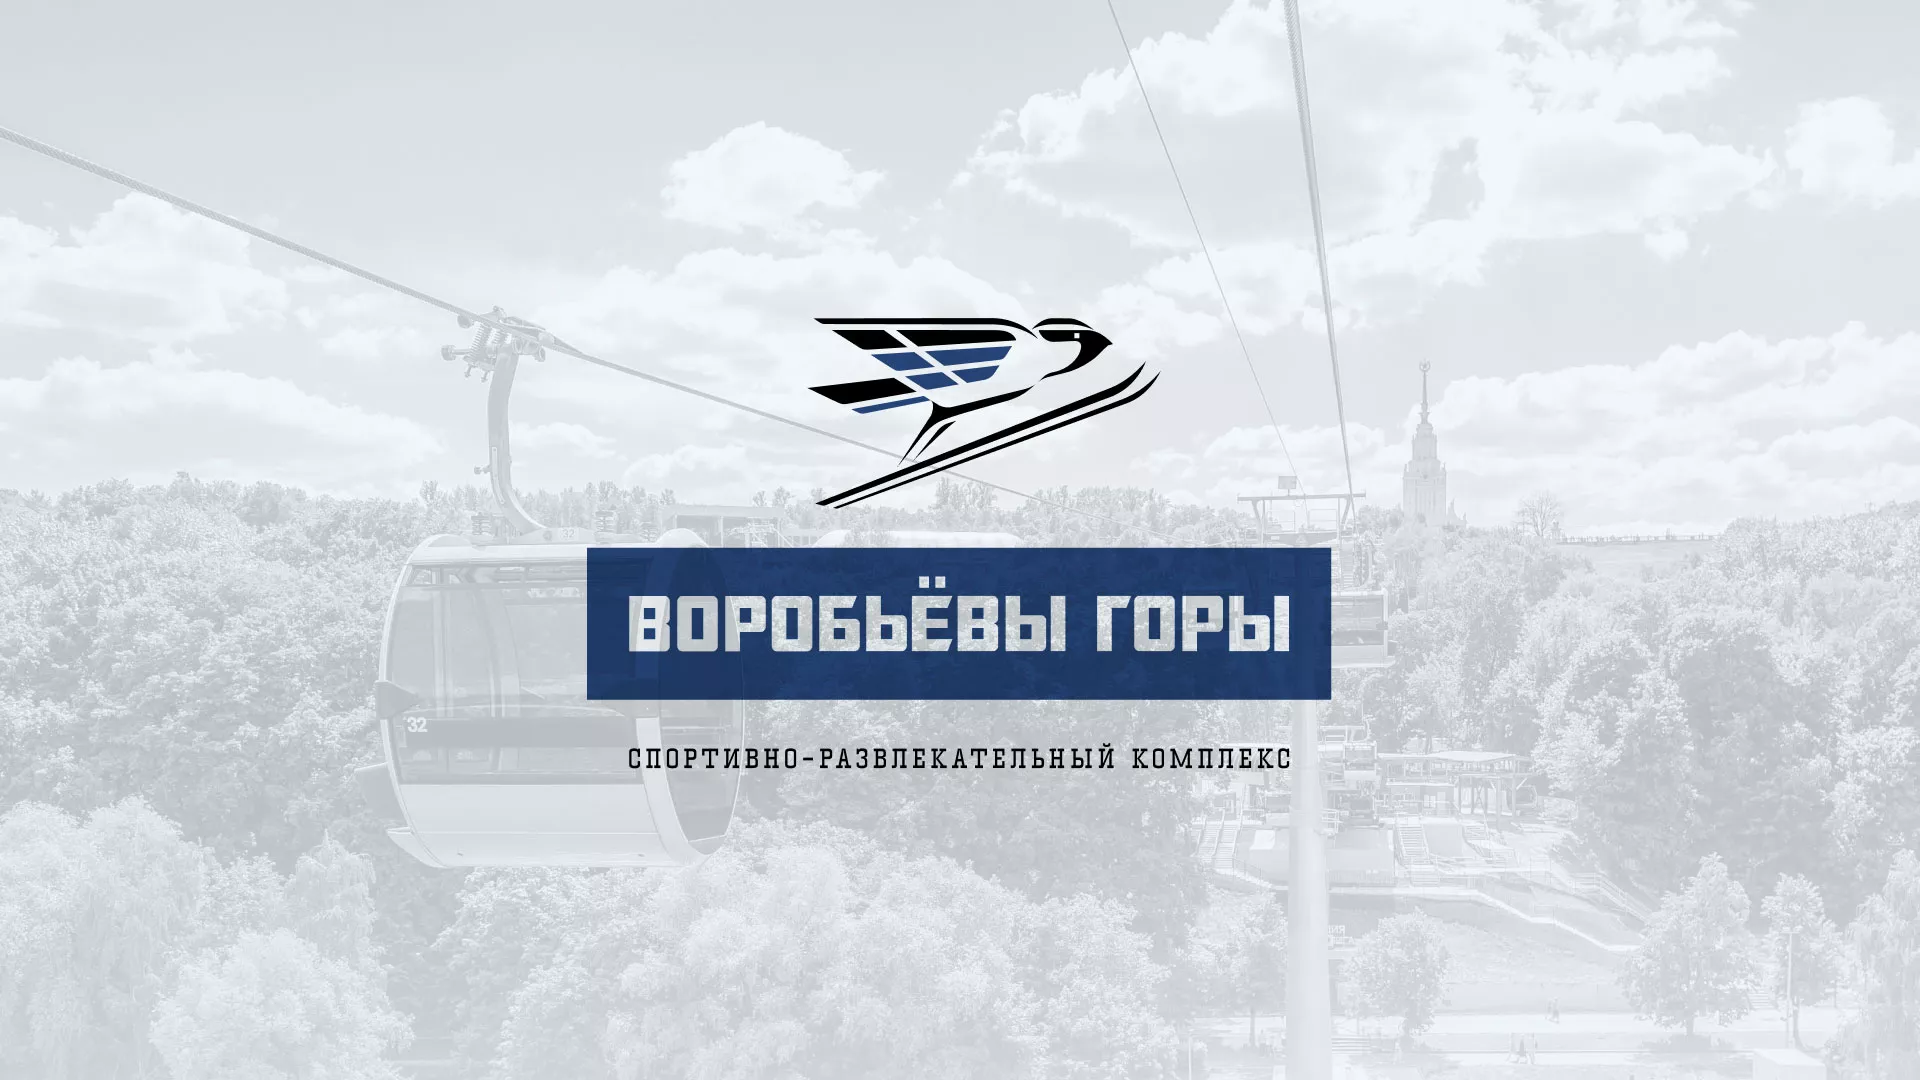 Разработка сайта в Жукове для спортивно-развлекательного комплекса «Воробьёвы горы»